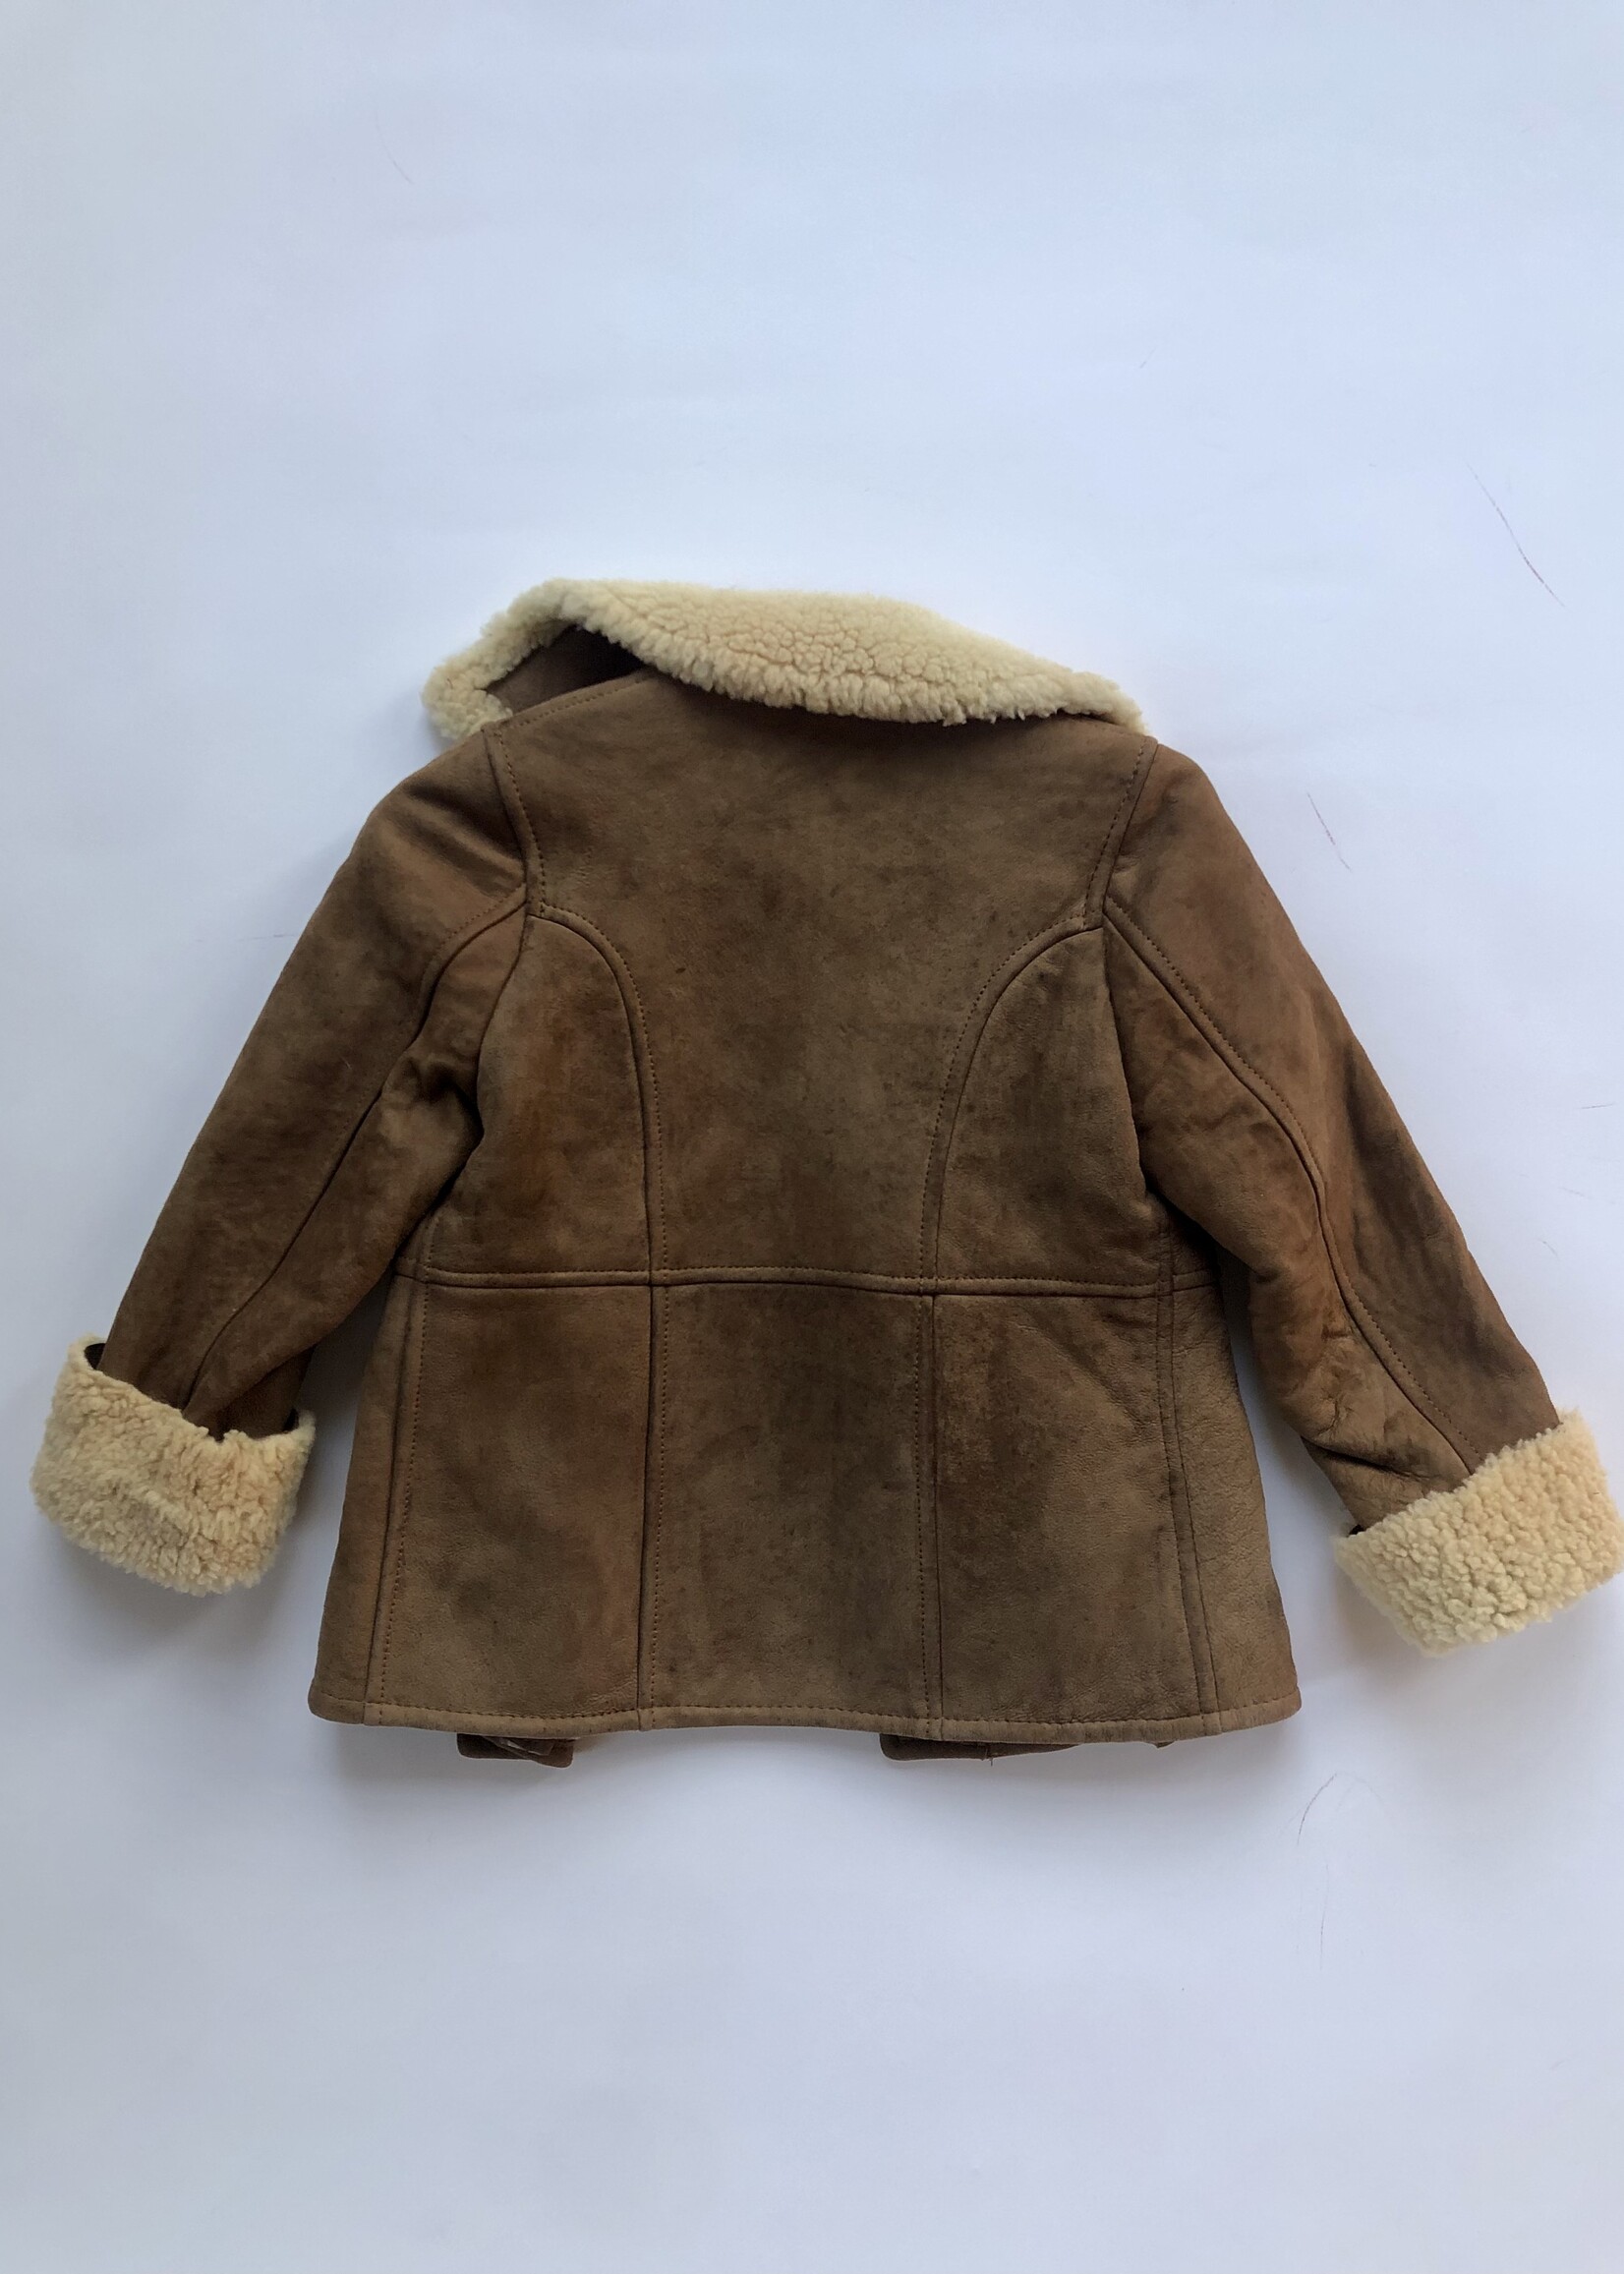 Chestnut sheepskin lammy coat 3-4y